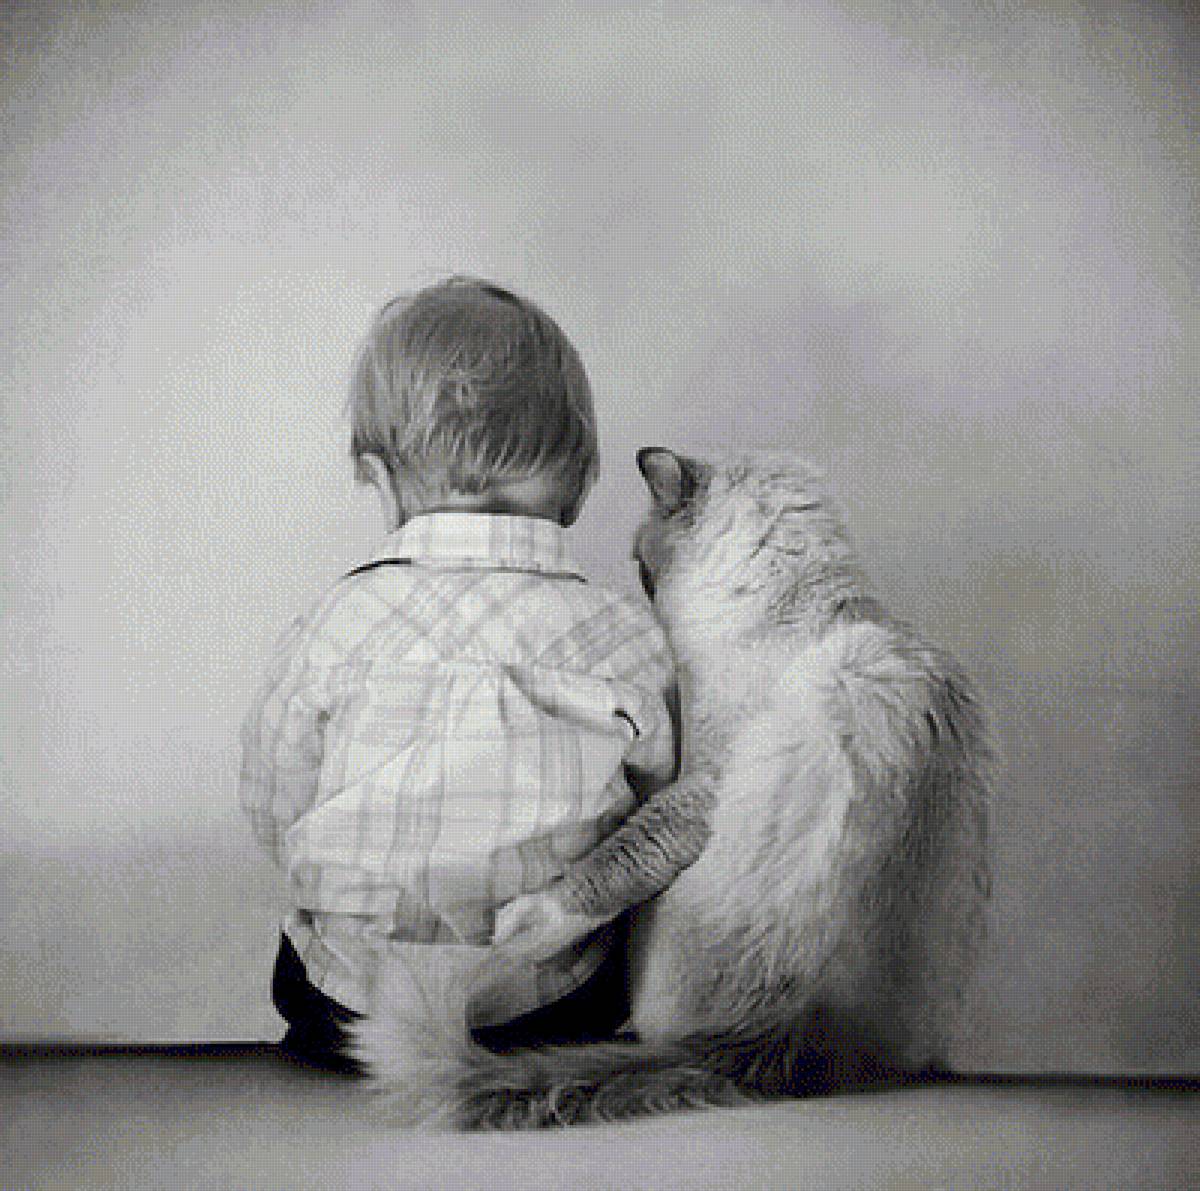 Обнимаю всегда. Ребенок обнимает кота. Мальчик обнимает кота. Добрые объятия. Поддержка в трудную минуту.